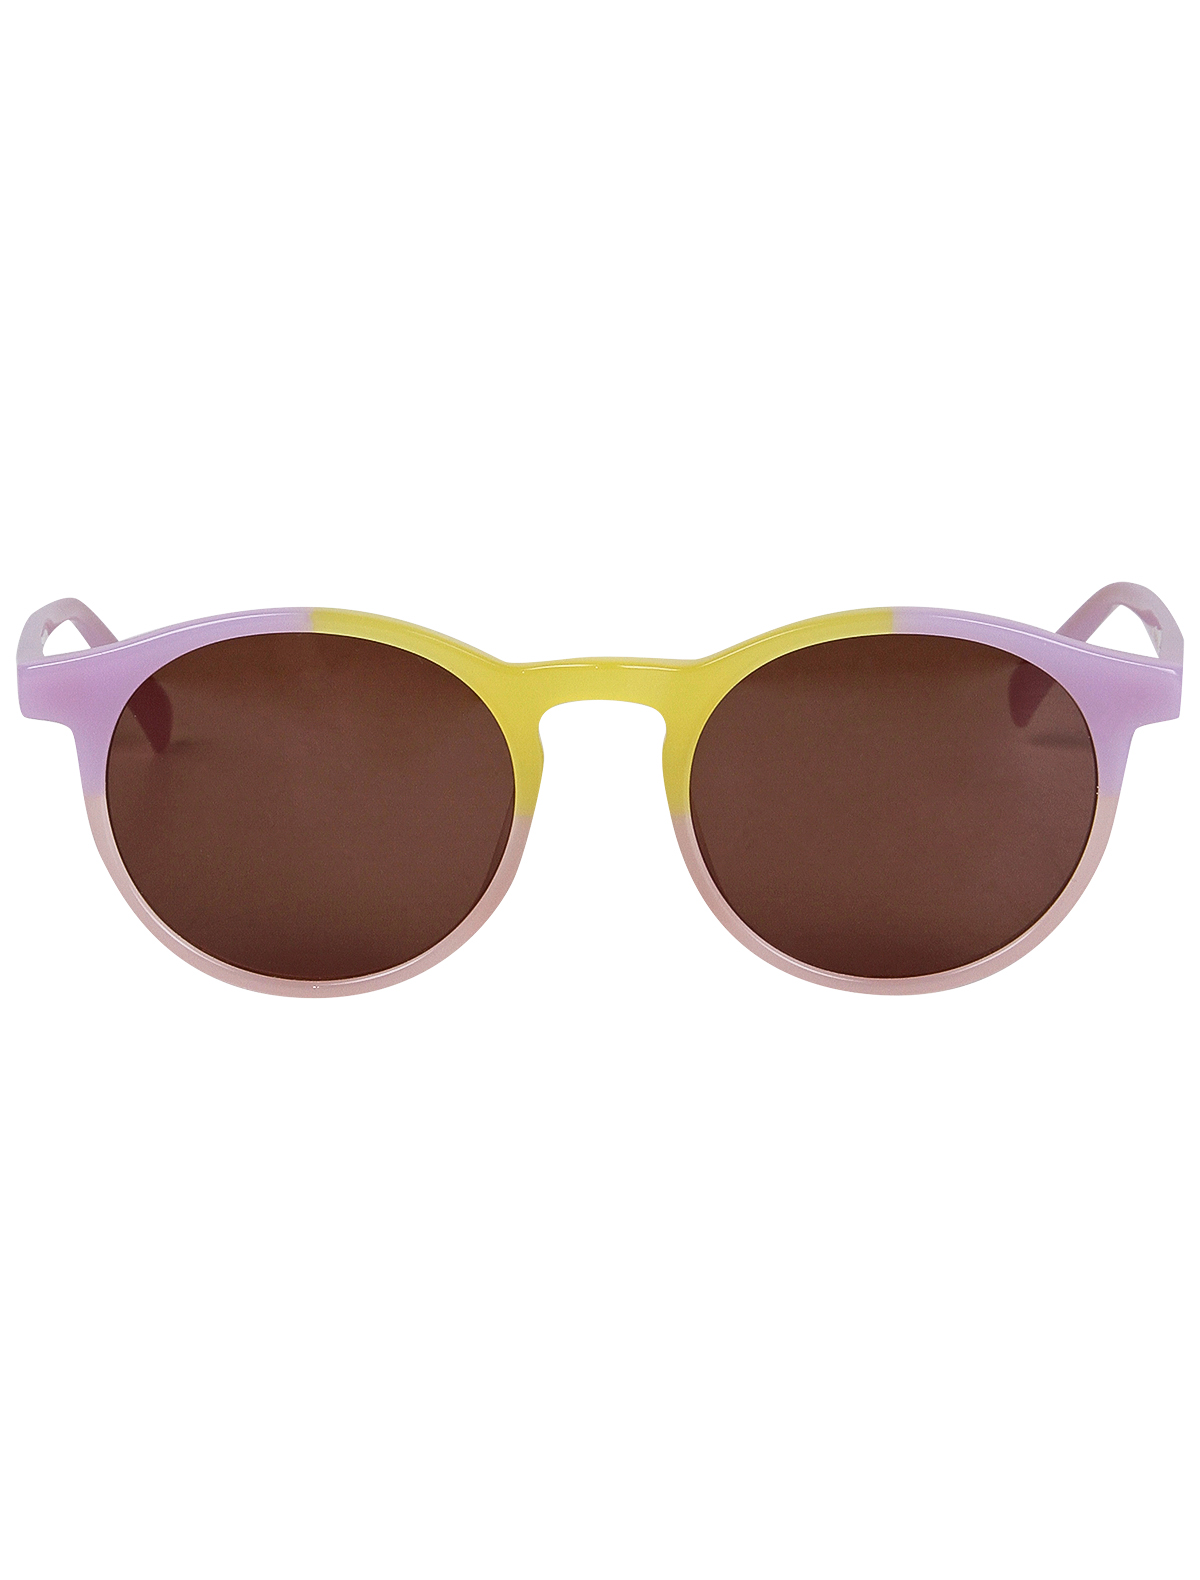 солнцезащитные очки soft gallery для девочки, разноцветные